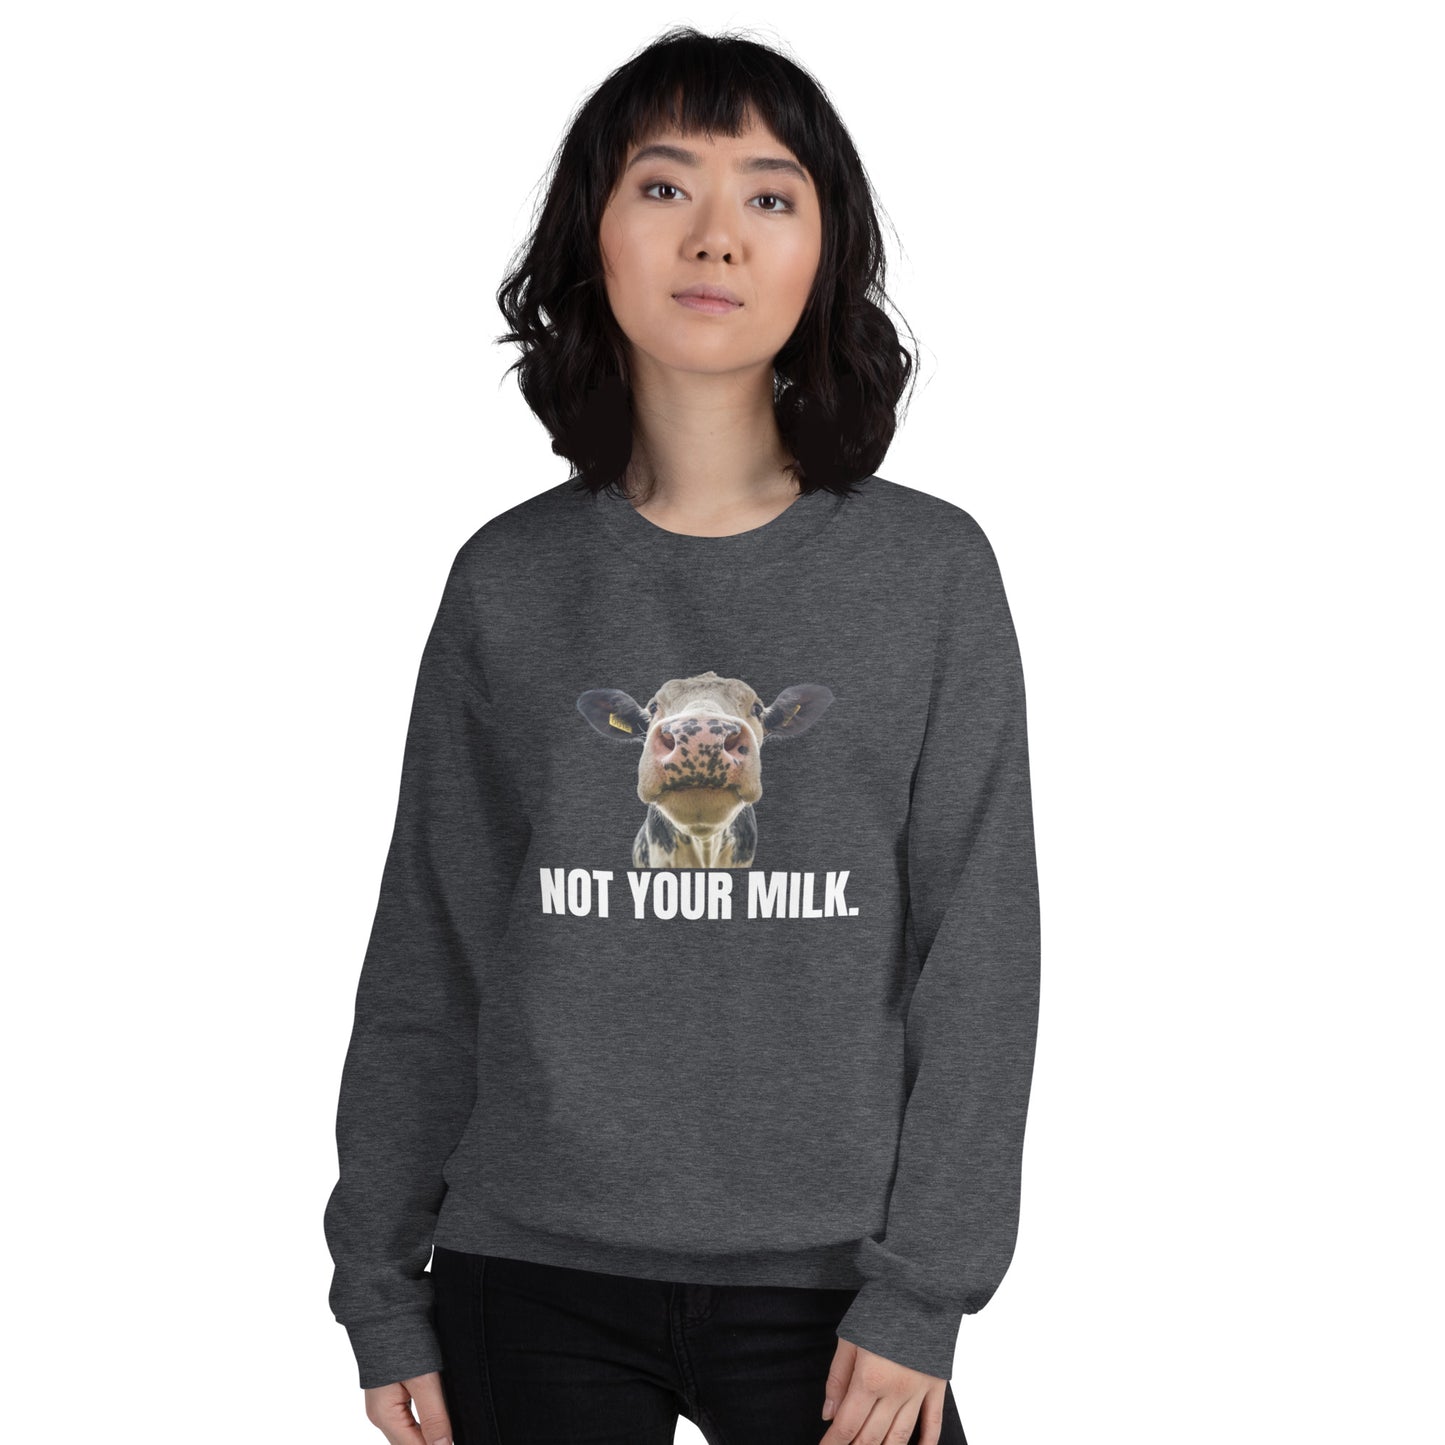 Not Your Milk - Unisex Sweatshirt